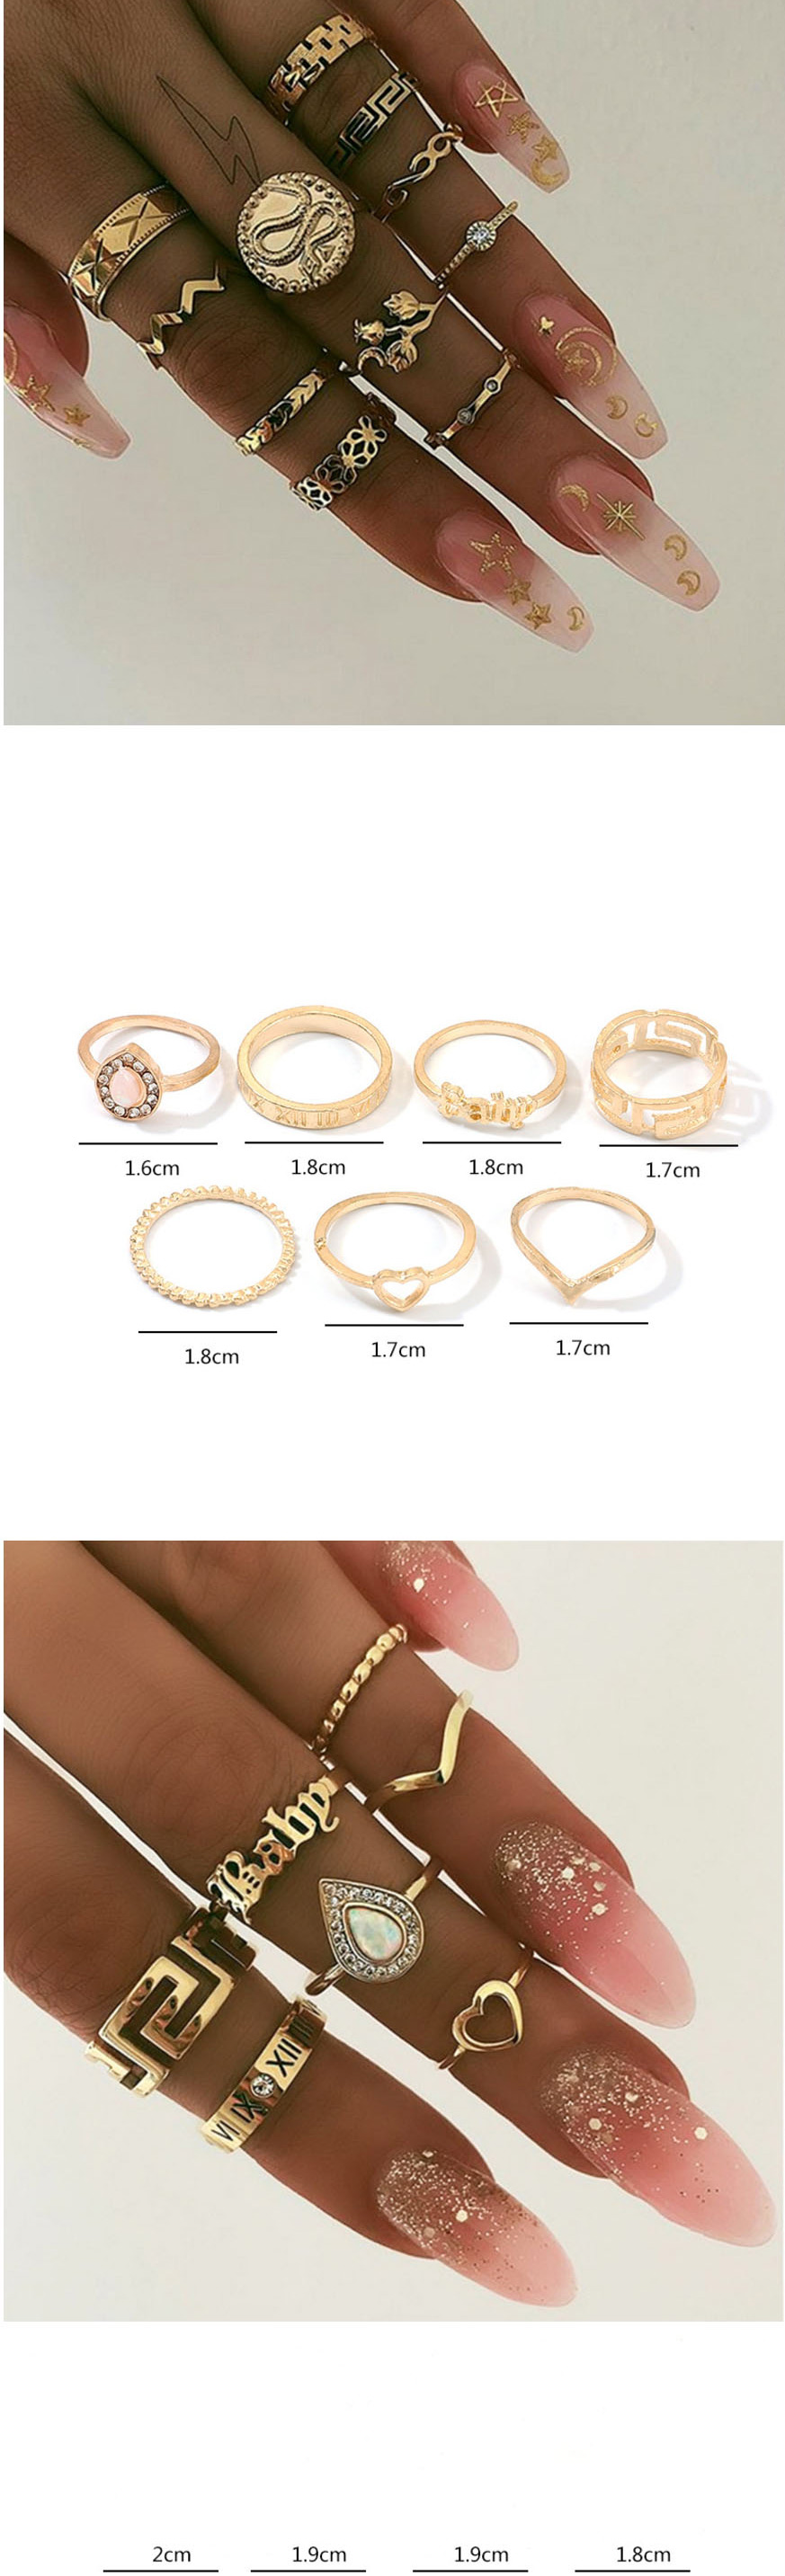 Fashion Golden Round Diamond Drop Ring Set,Rings Set